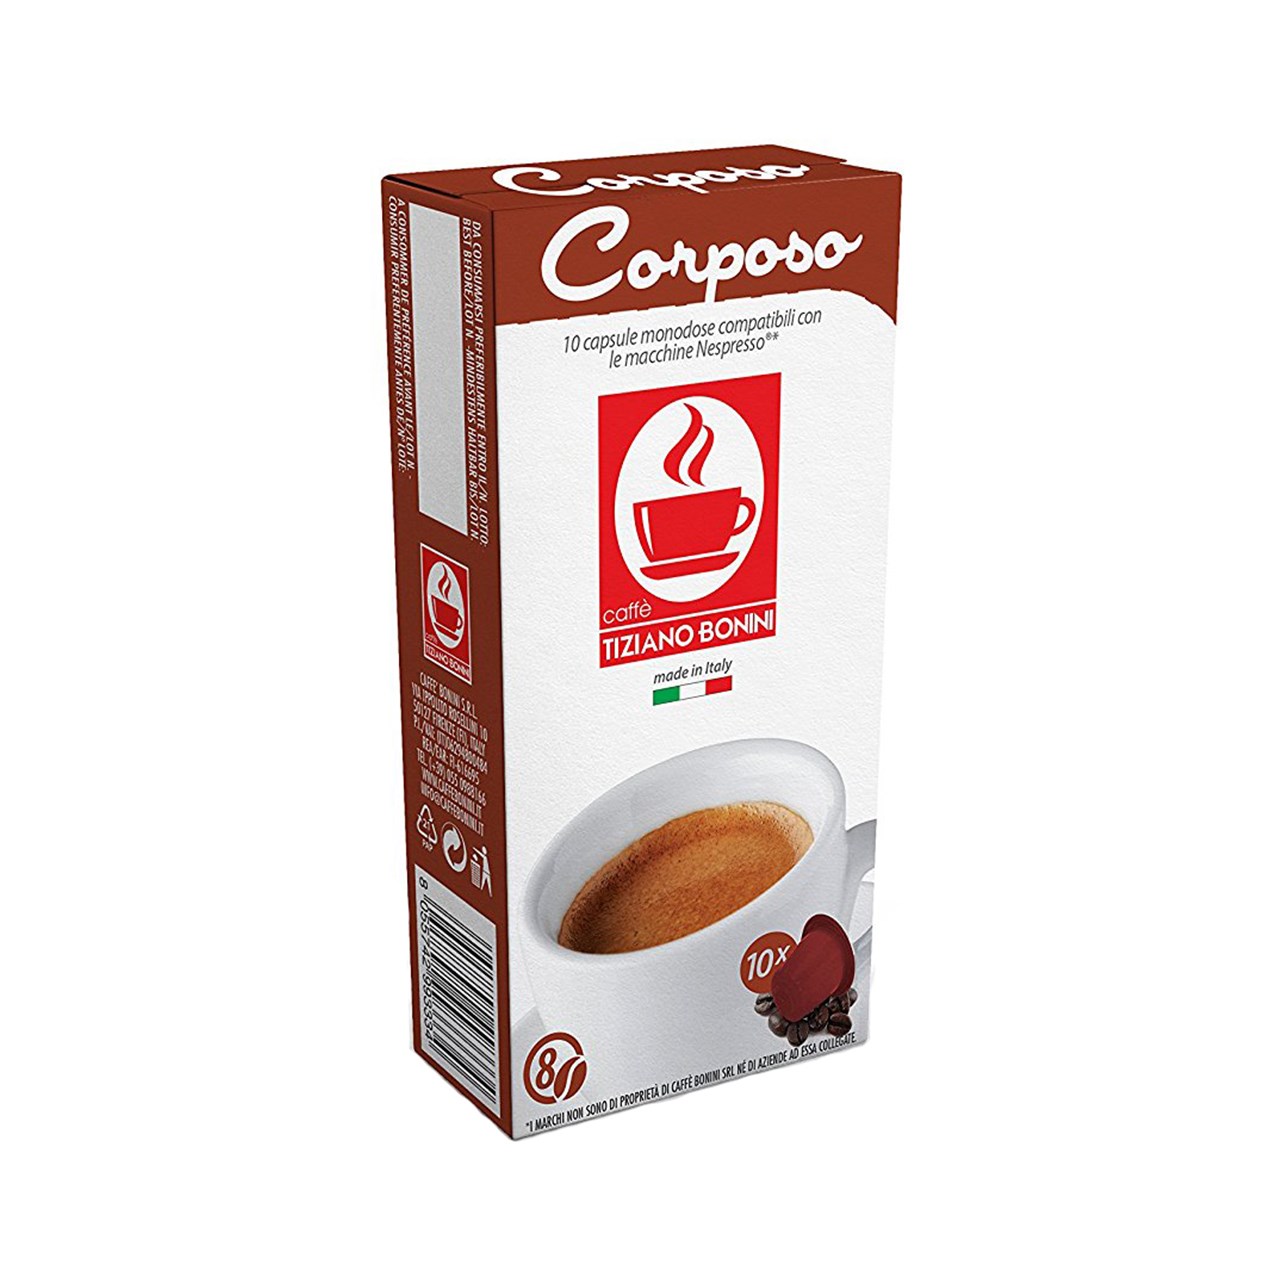 کپسول قهوه تیزیانو بونینی مدل Corposo